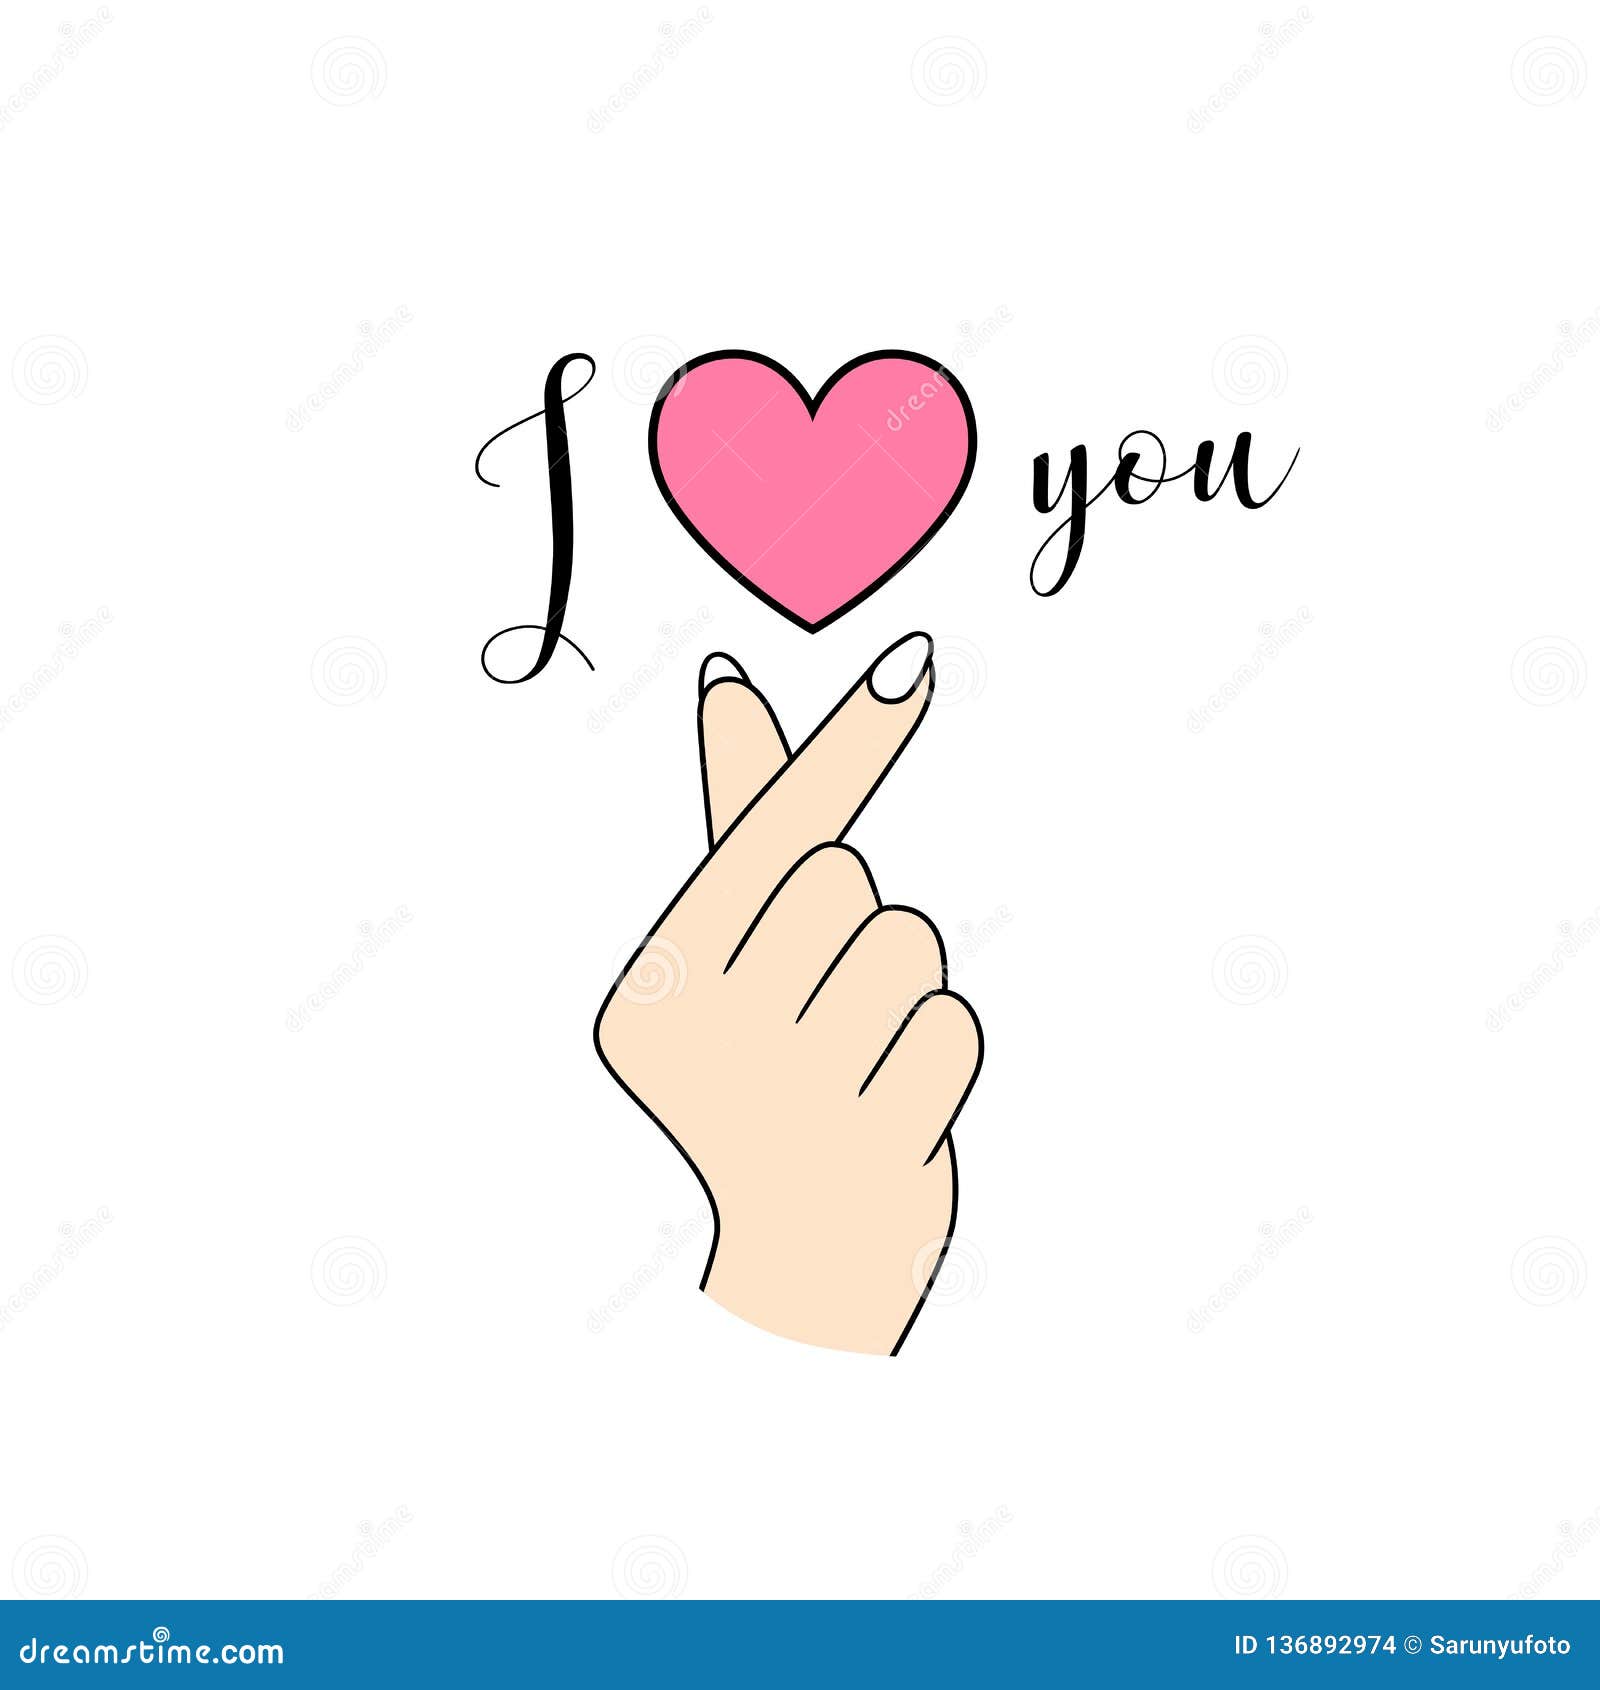 Я тебя люблю на корейском. Корейский знак сердечко. Стикеры корейское сердечко руками. Сердечко рукой Корея. Знак я тебя люблю.